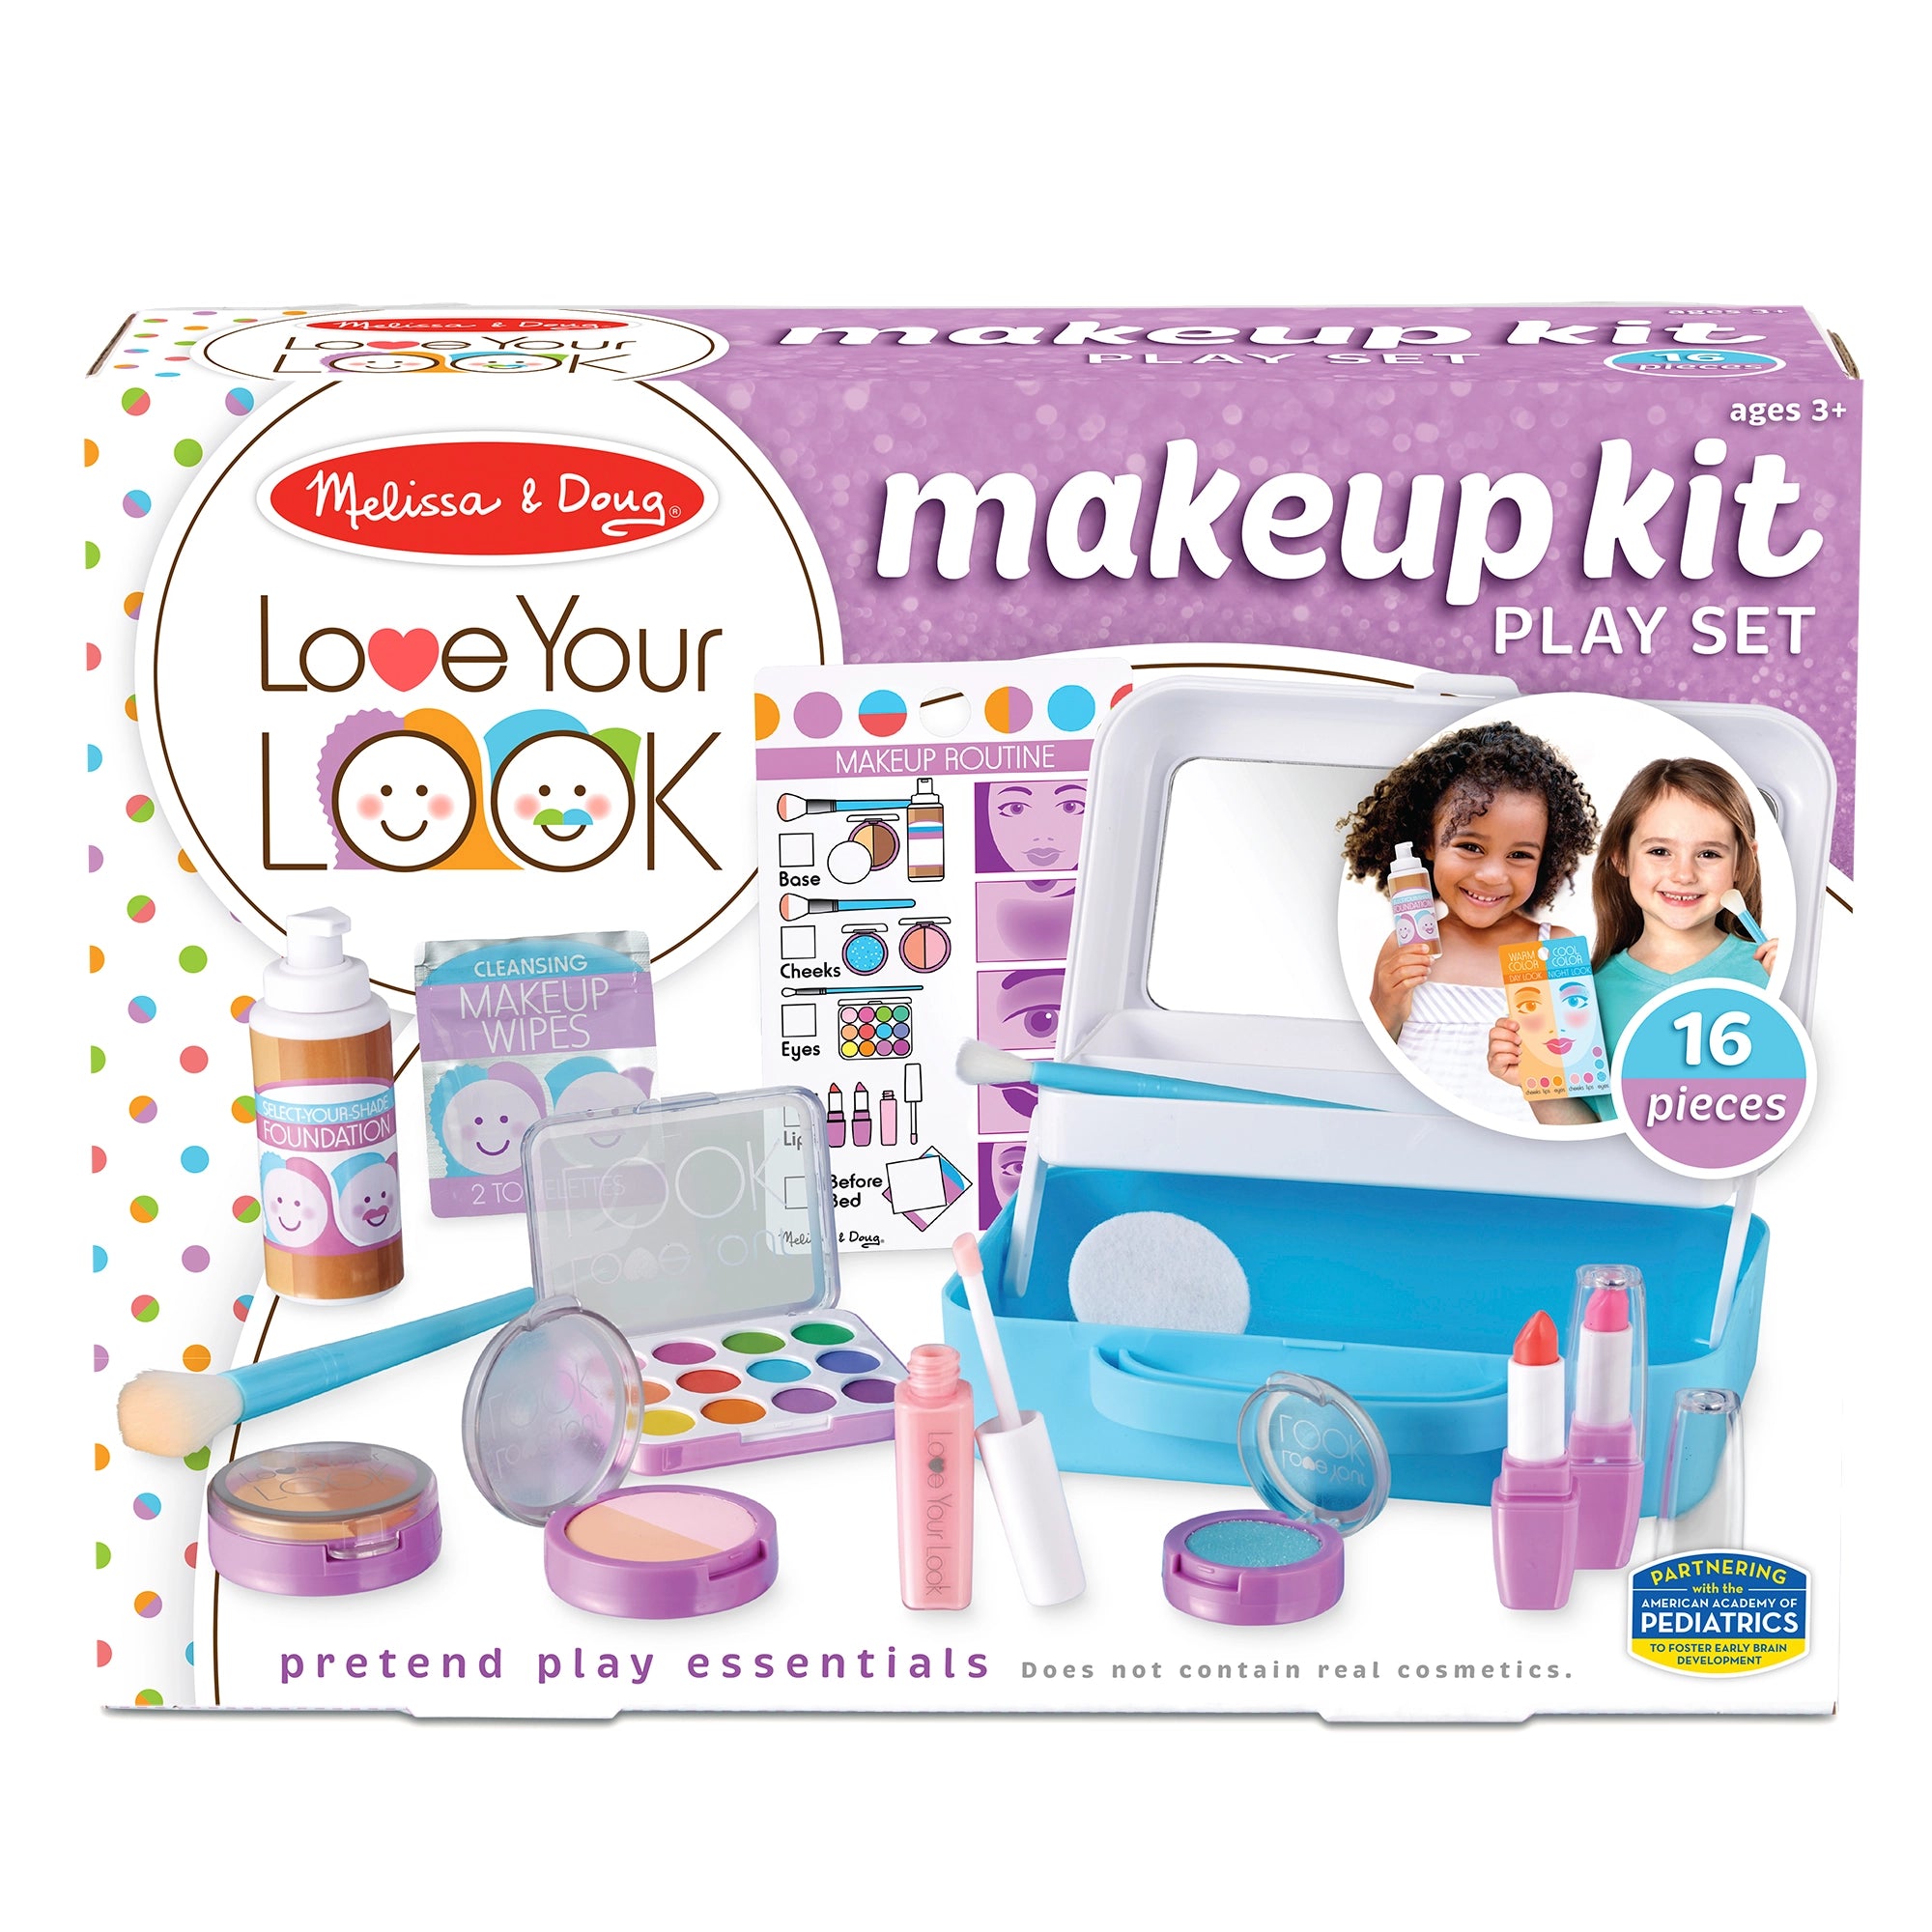 Melissa & Doug Love your Look - Makeup Kit Play Set